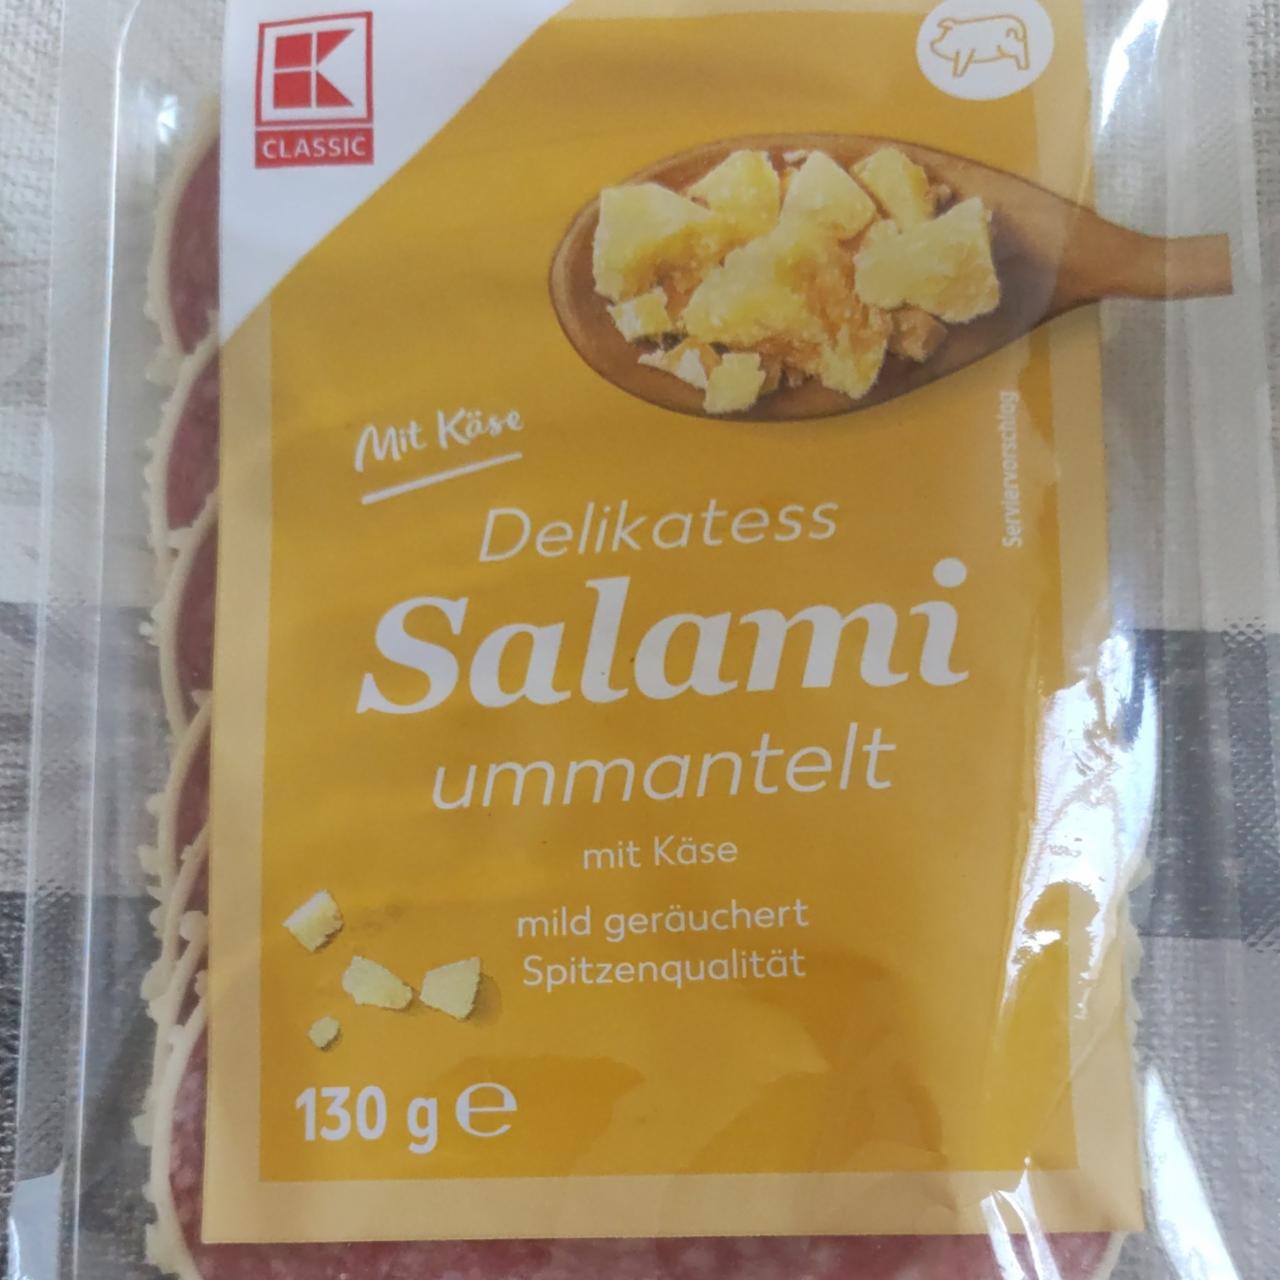 Фото - Колбаса в сыре Salami mit Käse K-Classic